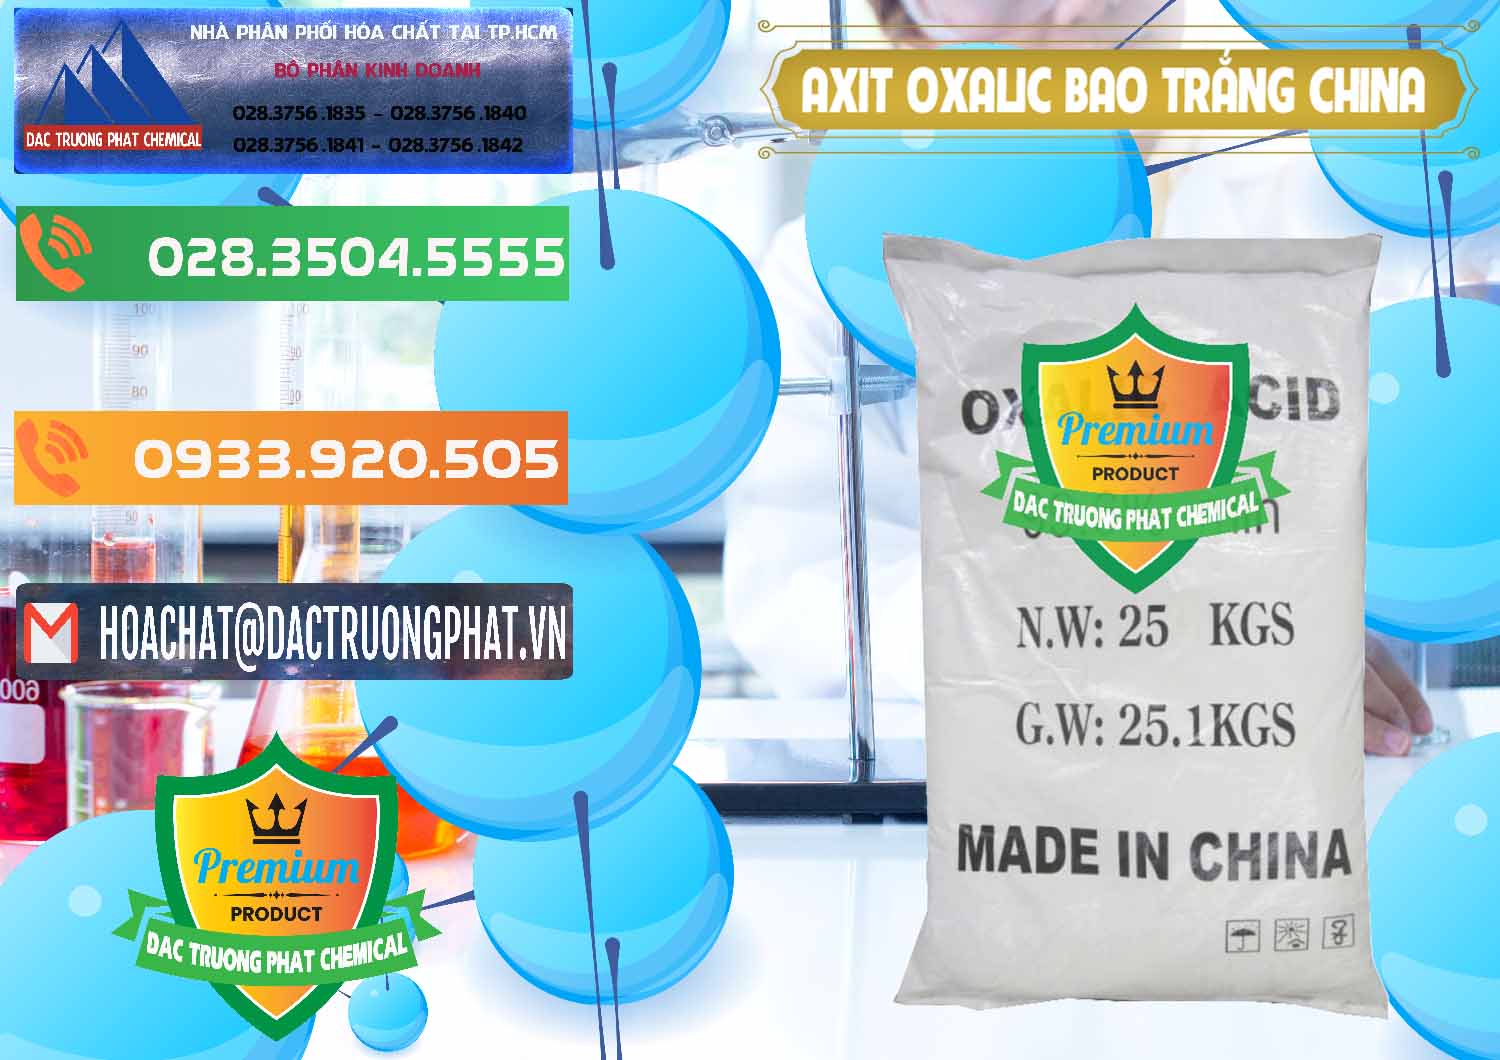 Đơn vị chuyên cung cấp ( bán ) Acid Oxalic – Axit Oxalic 99.6% Bao Trắng Trung Quốc China - 0270 - Chuyên kinh doanh ( phân phối ) hóa chất tại TP.HCM - hoachatxulynuoc.com.vn